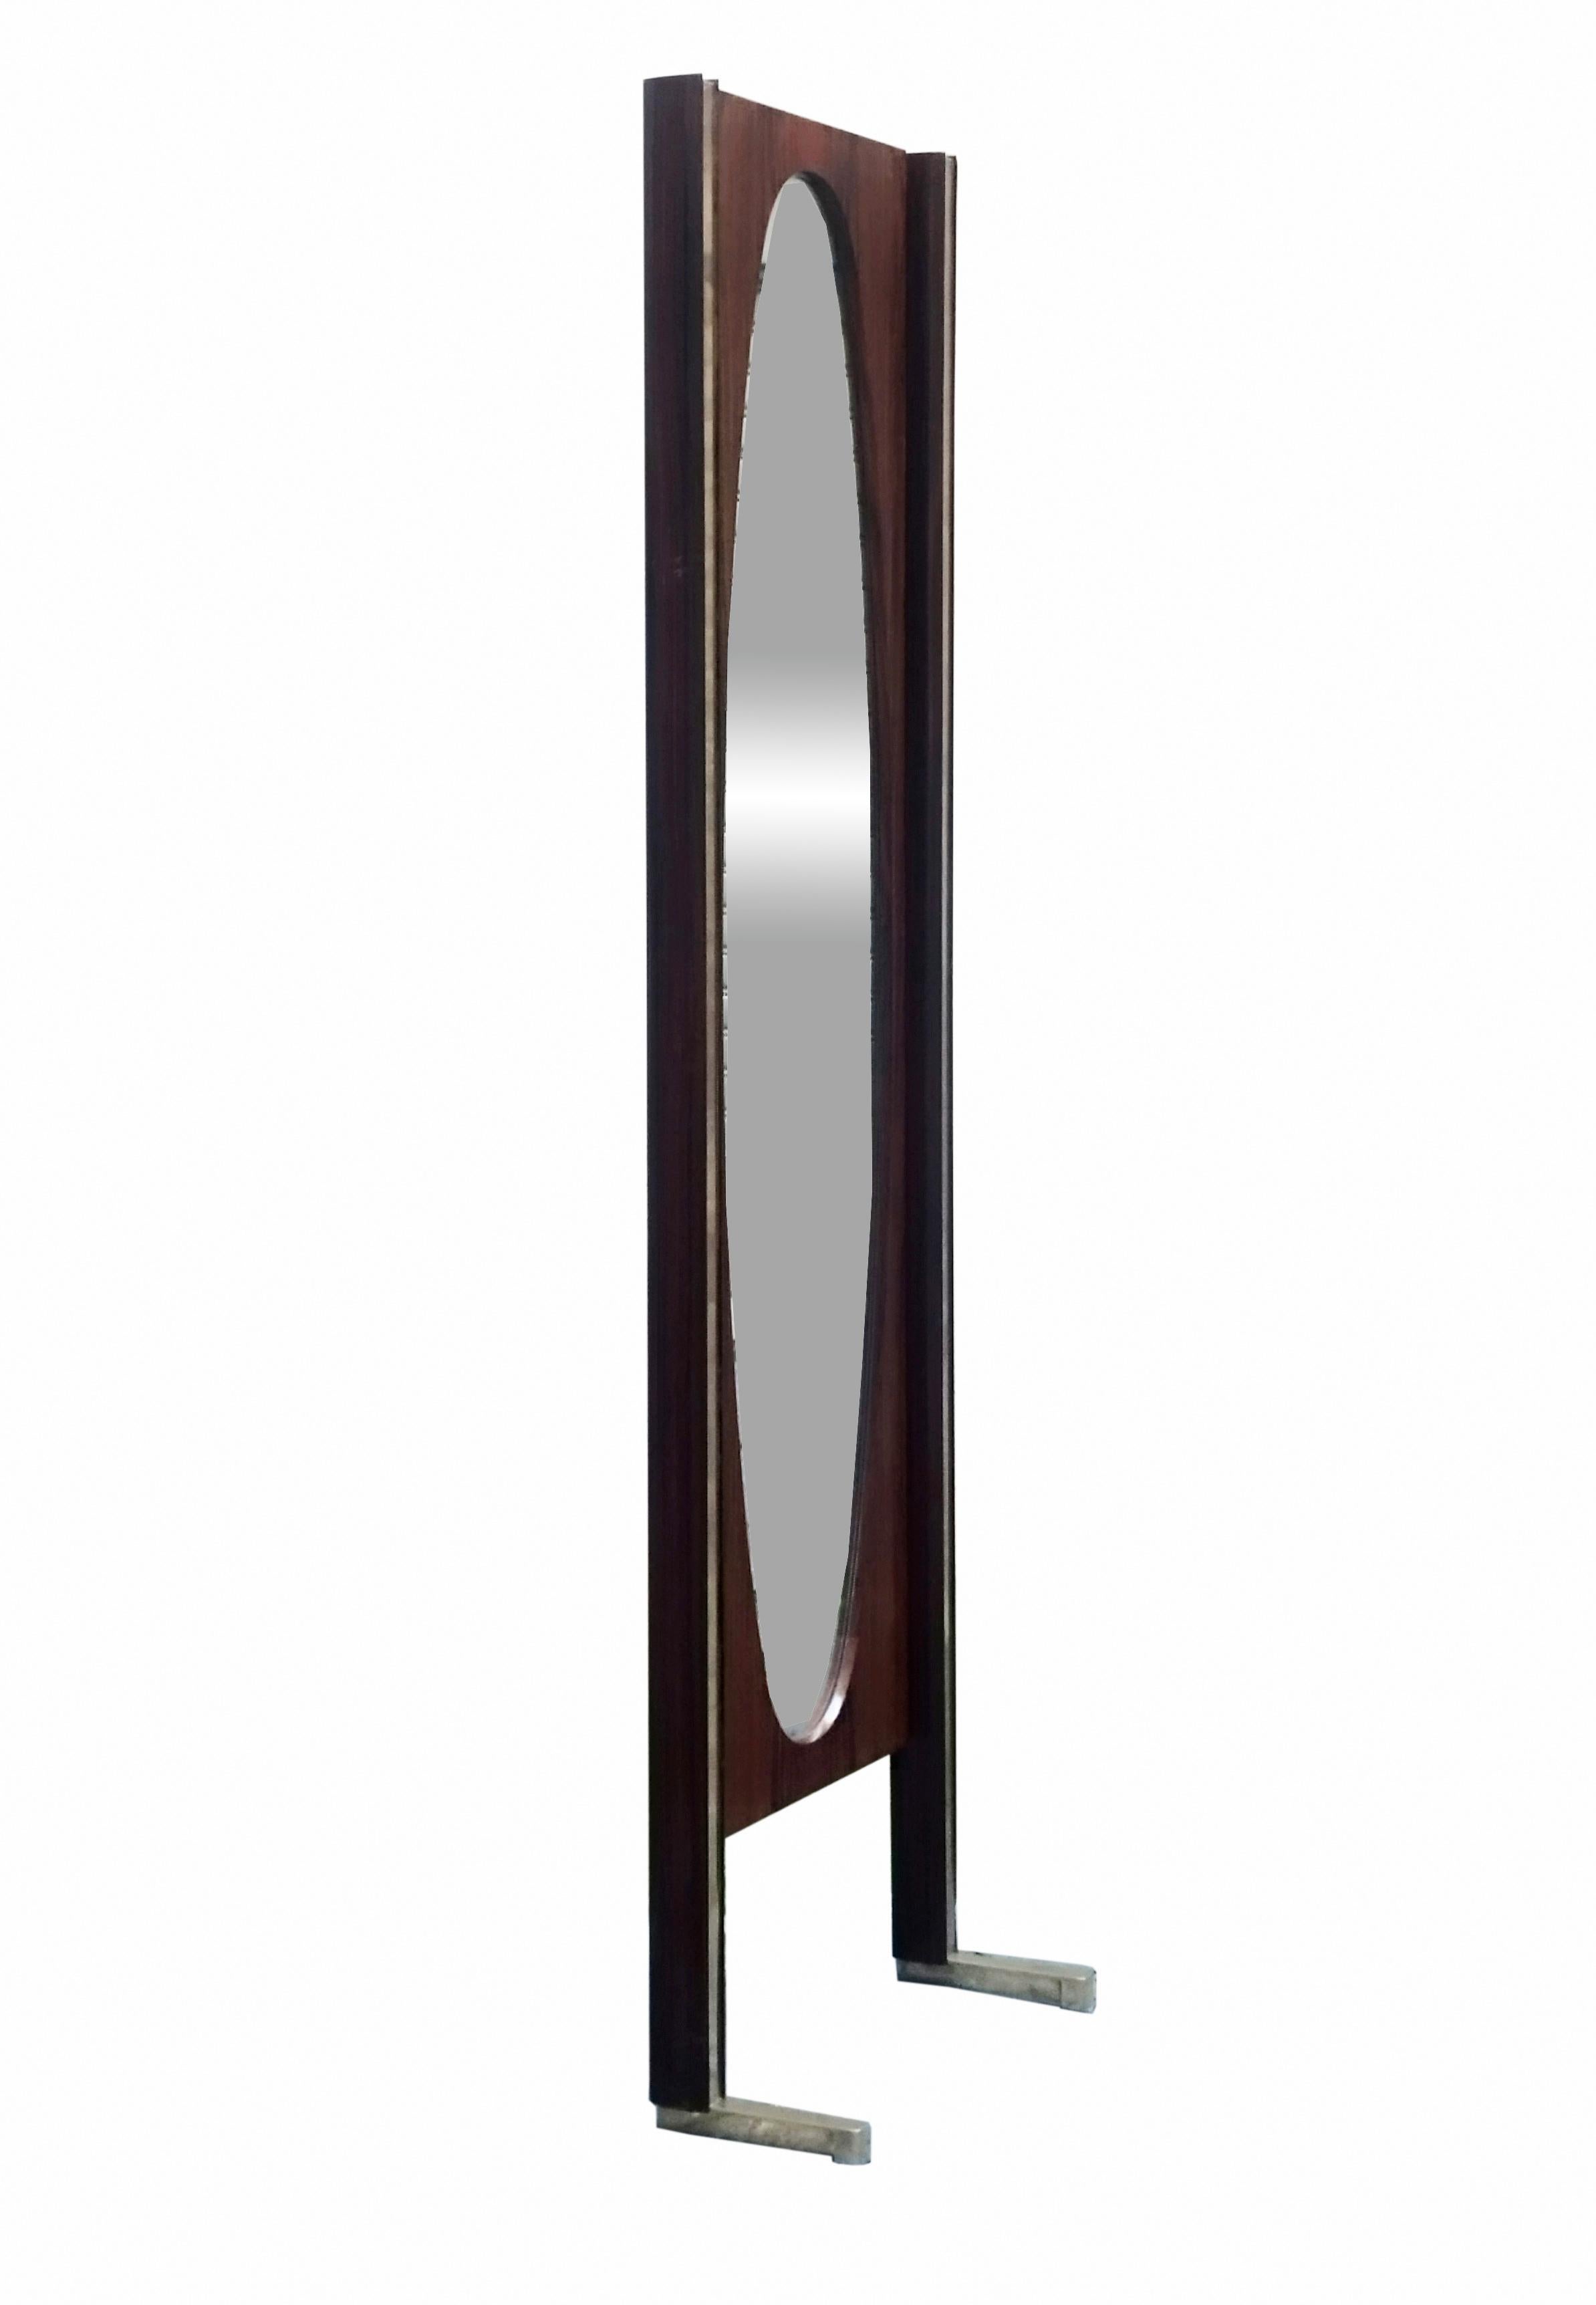 Rare miroir de sol de fabrication italienne produit dans les années 1960, avec un cadre en bois et des profils en laiton reposant sur de lourds pieds en laiton. Un miroir ovale est monté à l'intérieur.